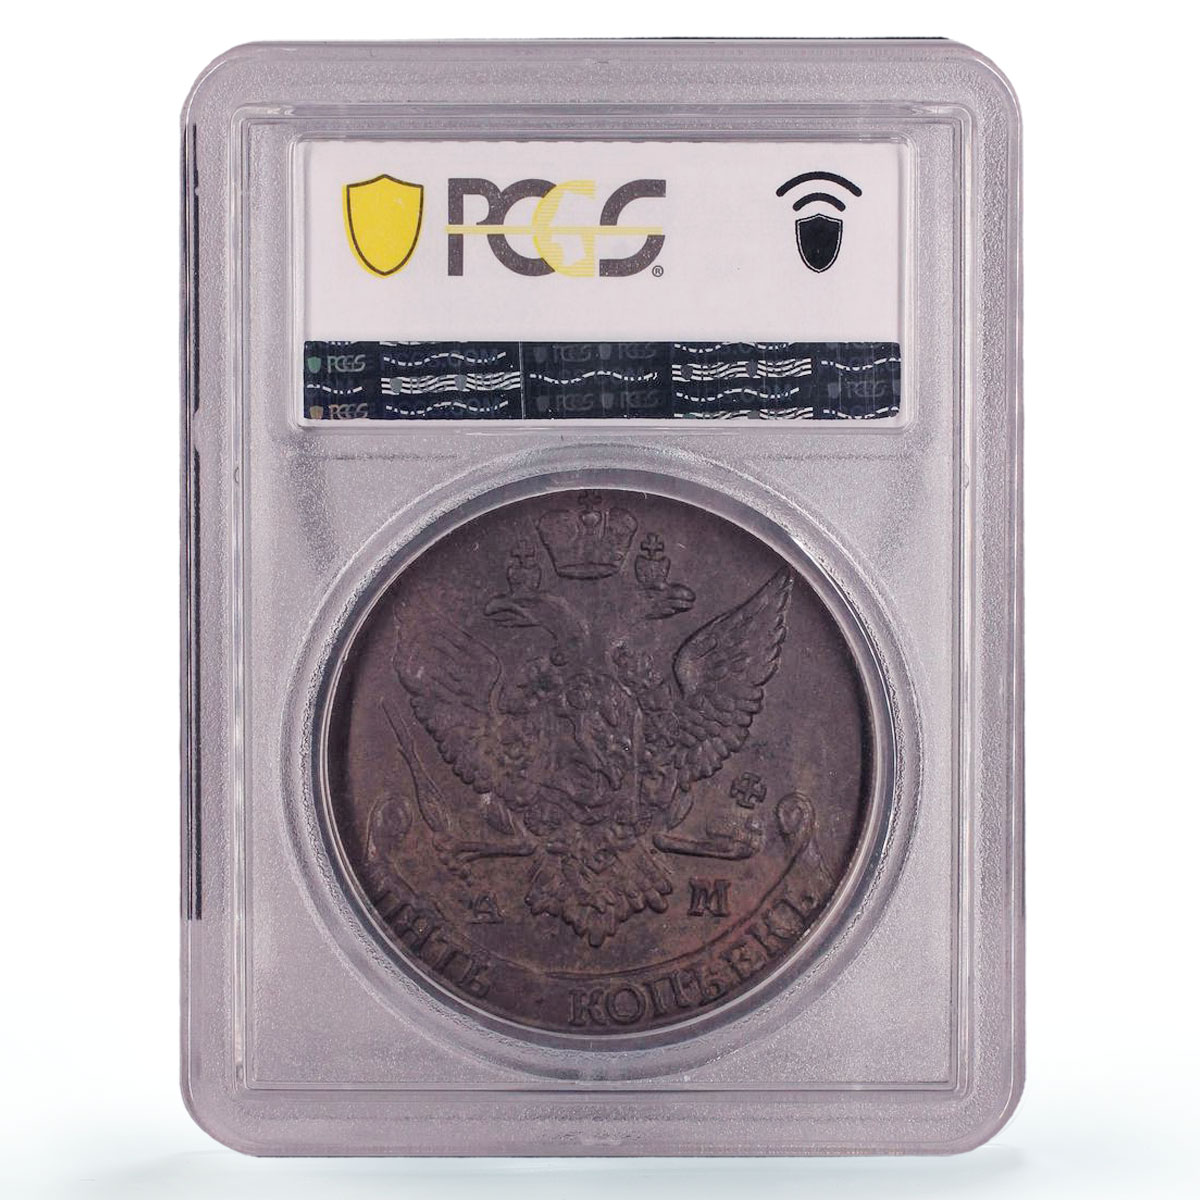 Russia Empire 5 kopecks Ekaterina II Coinage Bit-862 AU58 PCGS copper coin 1792